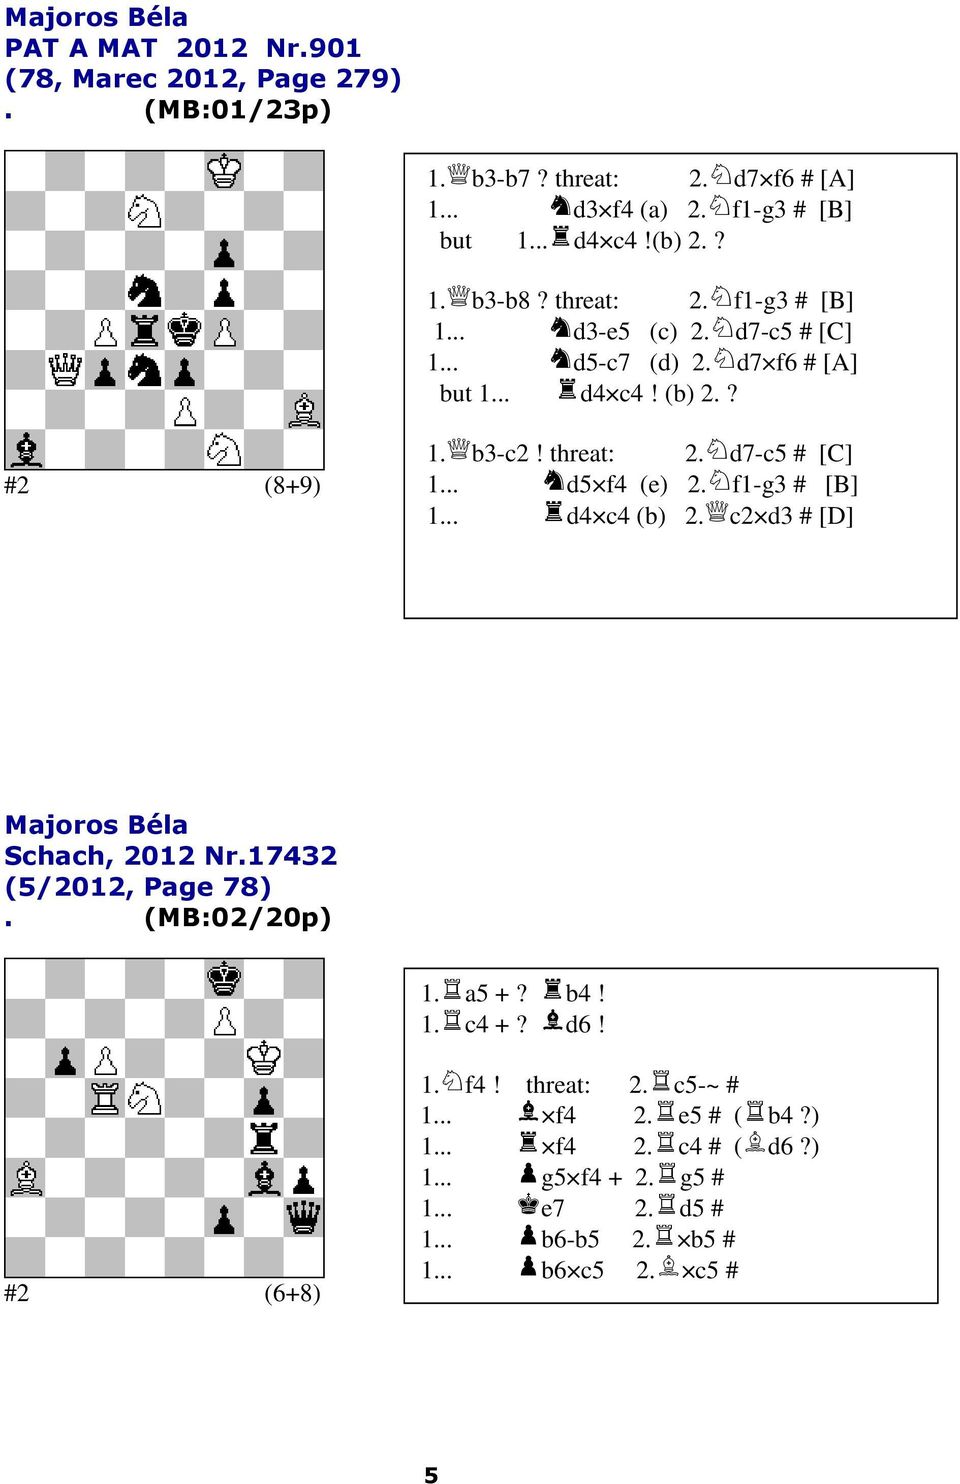 threat: 2 f1-g3 # [B] 1 d3-e5 (c) 2 d7-c5 # [C] 1 d5-c7 (d) 2 d7 f6 # [A] but 1 d4 c4! (b) 2? #2 (8+9) 1 b3-c2!